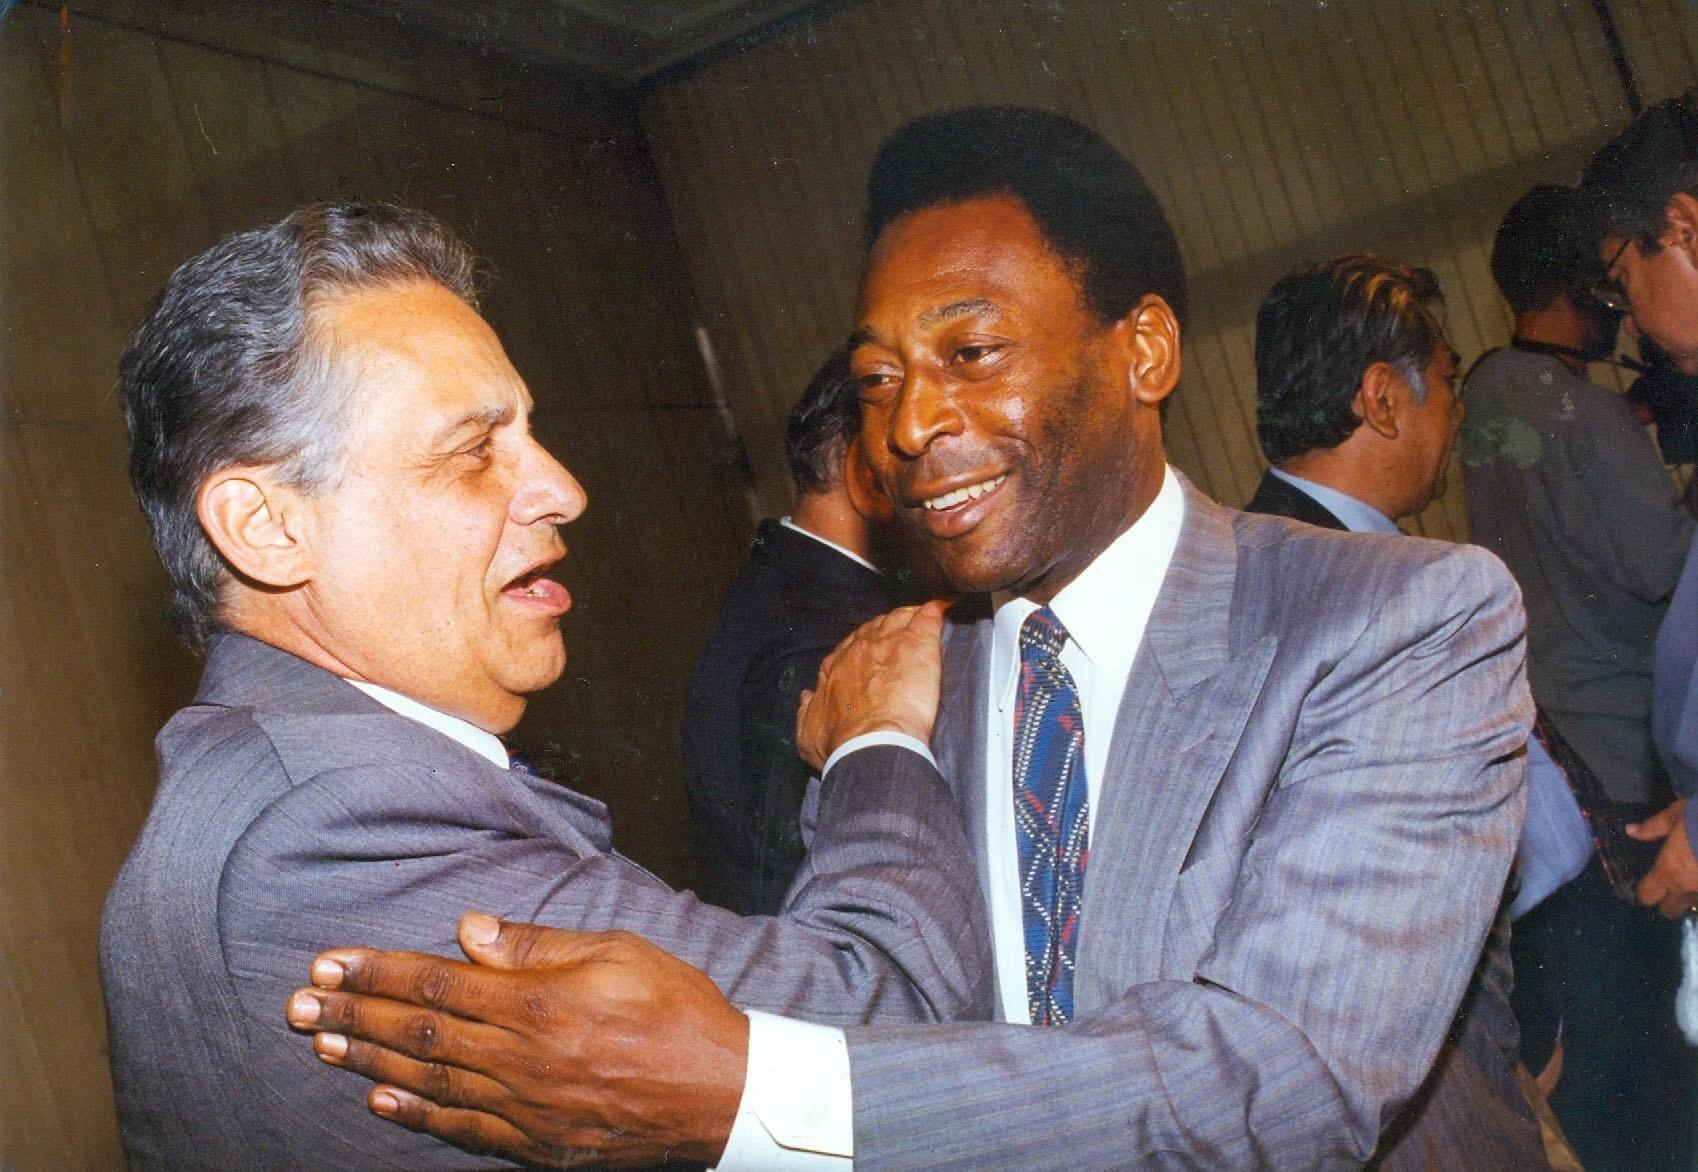 Retrato do ex-presidente da República, Fernando Henrique Cardoso, e do ex-jogador de futebol, Pelé, durante encontro em São Paulo. - Luiz Prado/Estadão Conteúdo